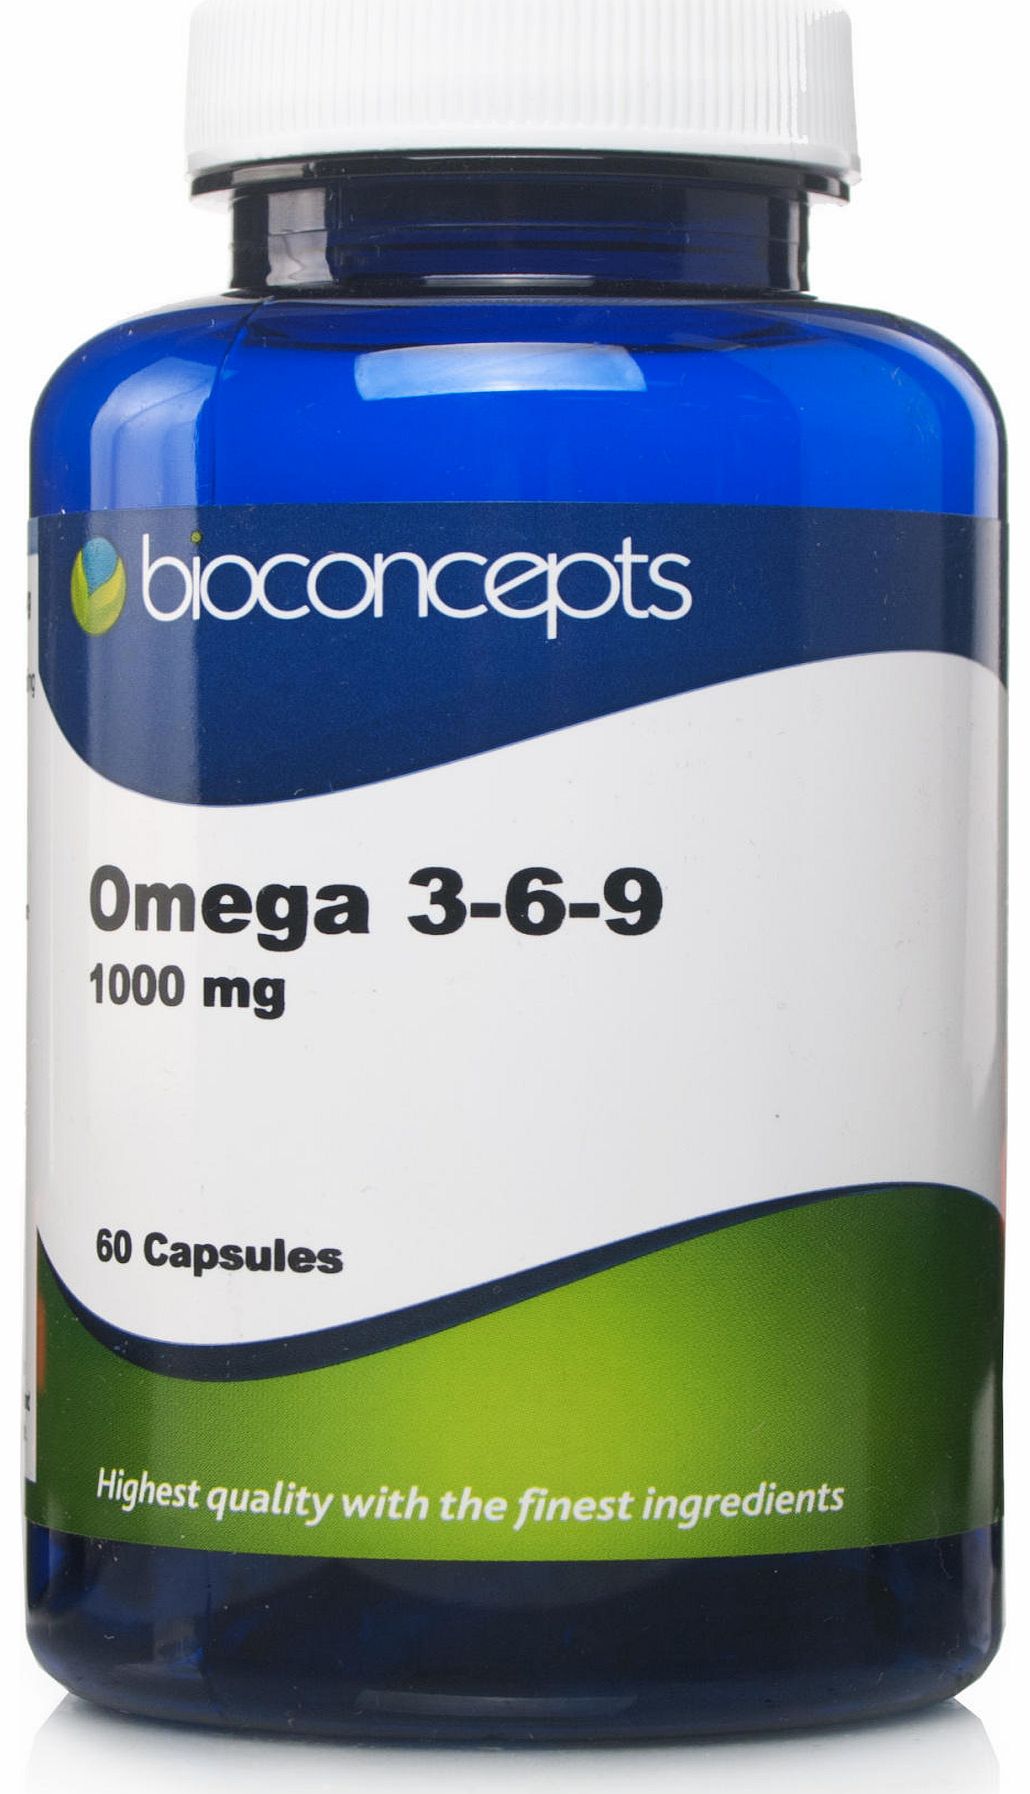 Bioconcepts Omega 3-6-9 1000mg